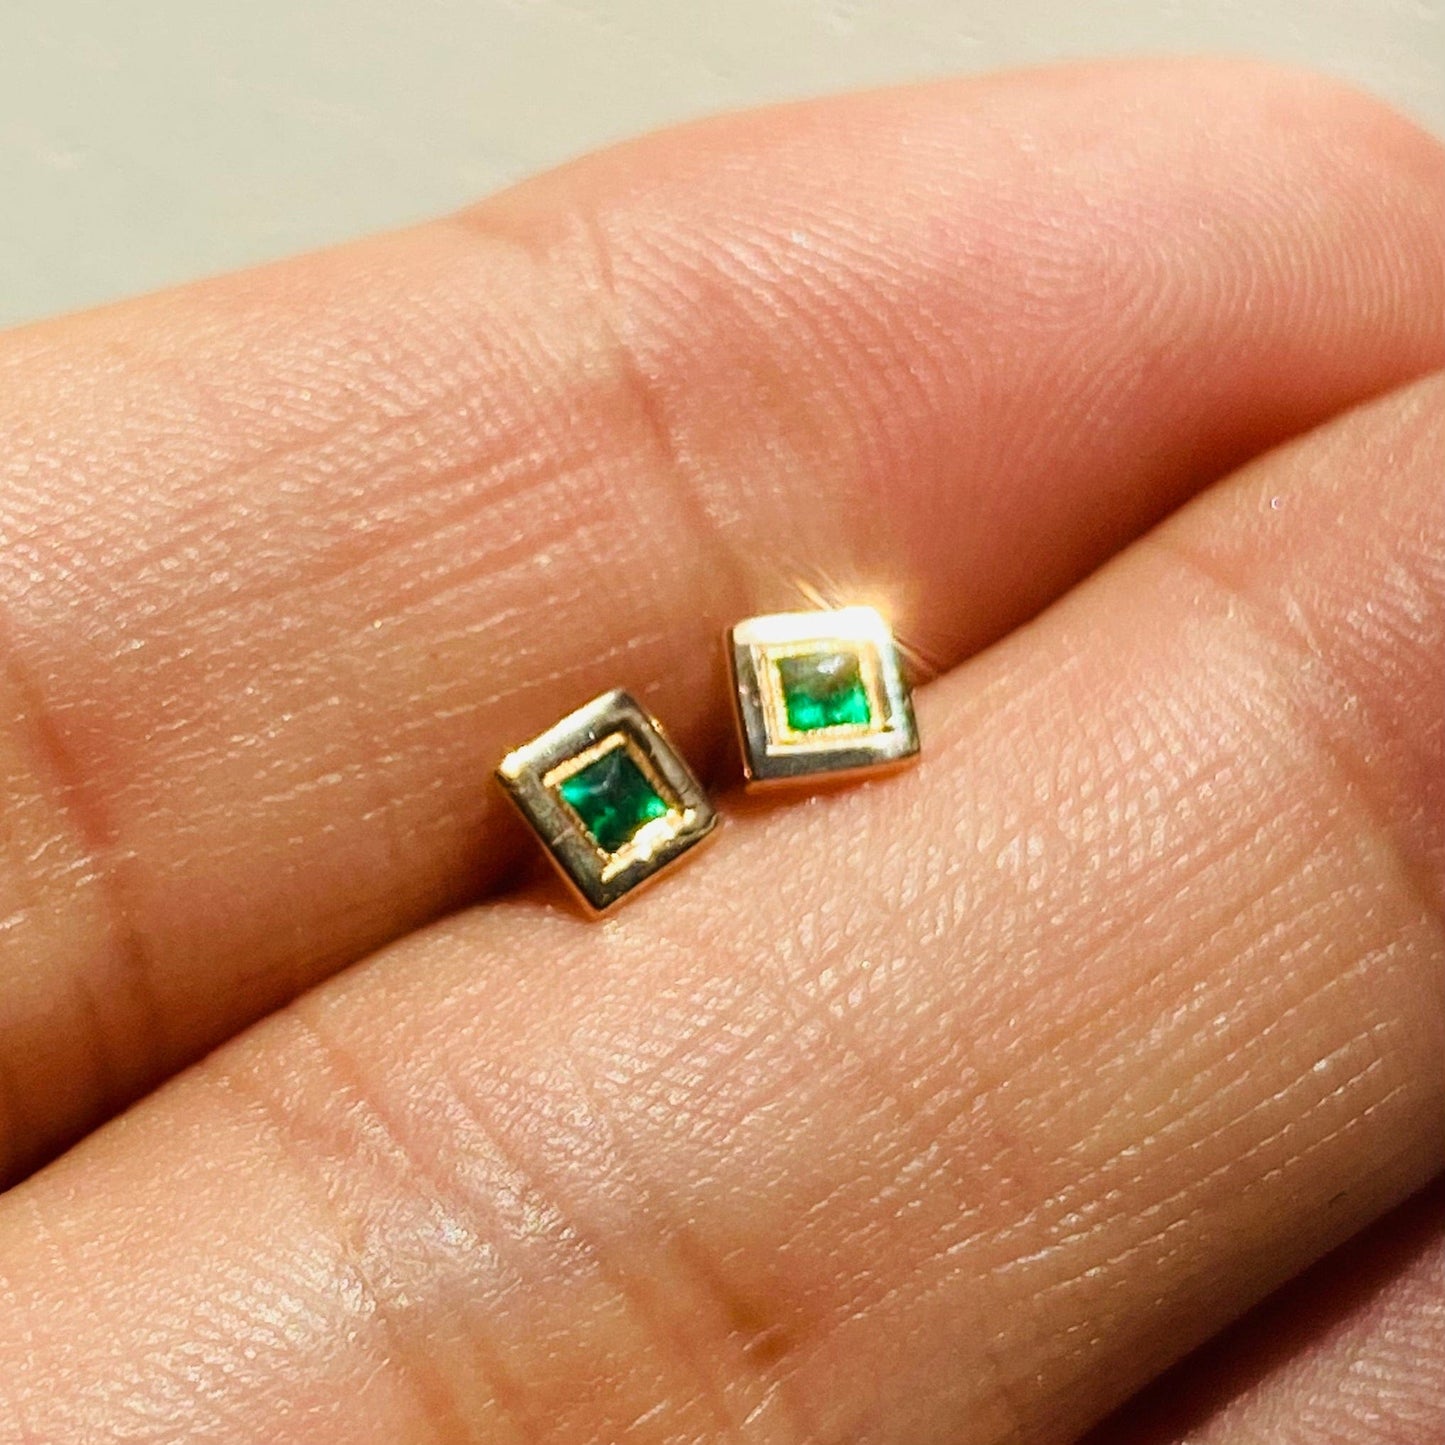 Square Cut Emerald Stud Earring